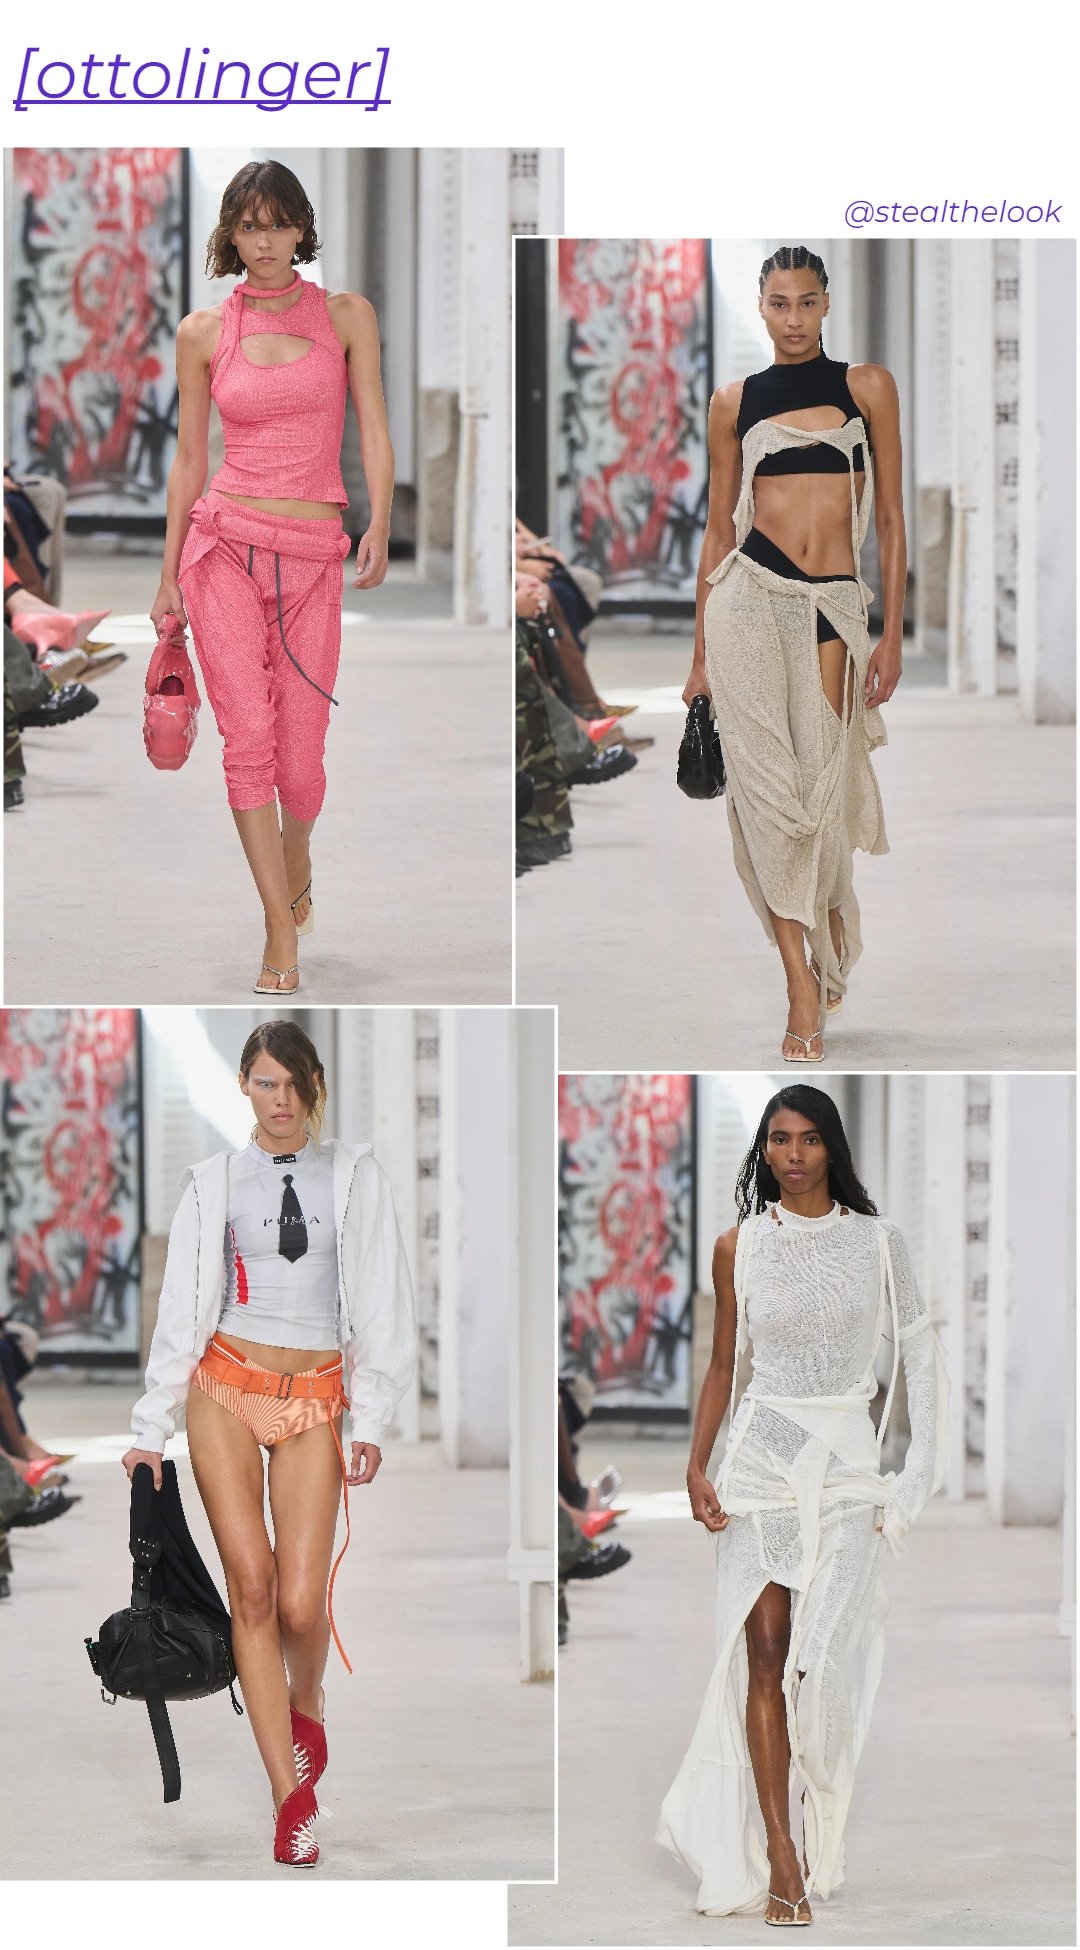 Ottolinger - roupas diversas - tendências de moda - verão - colagem de imagens - https://stealthelook.com.br